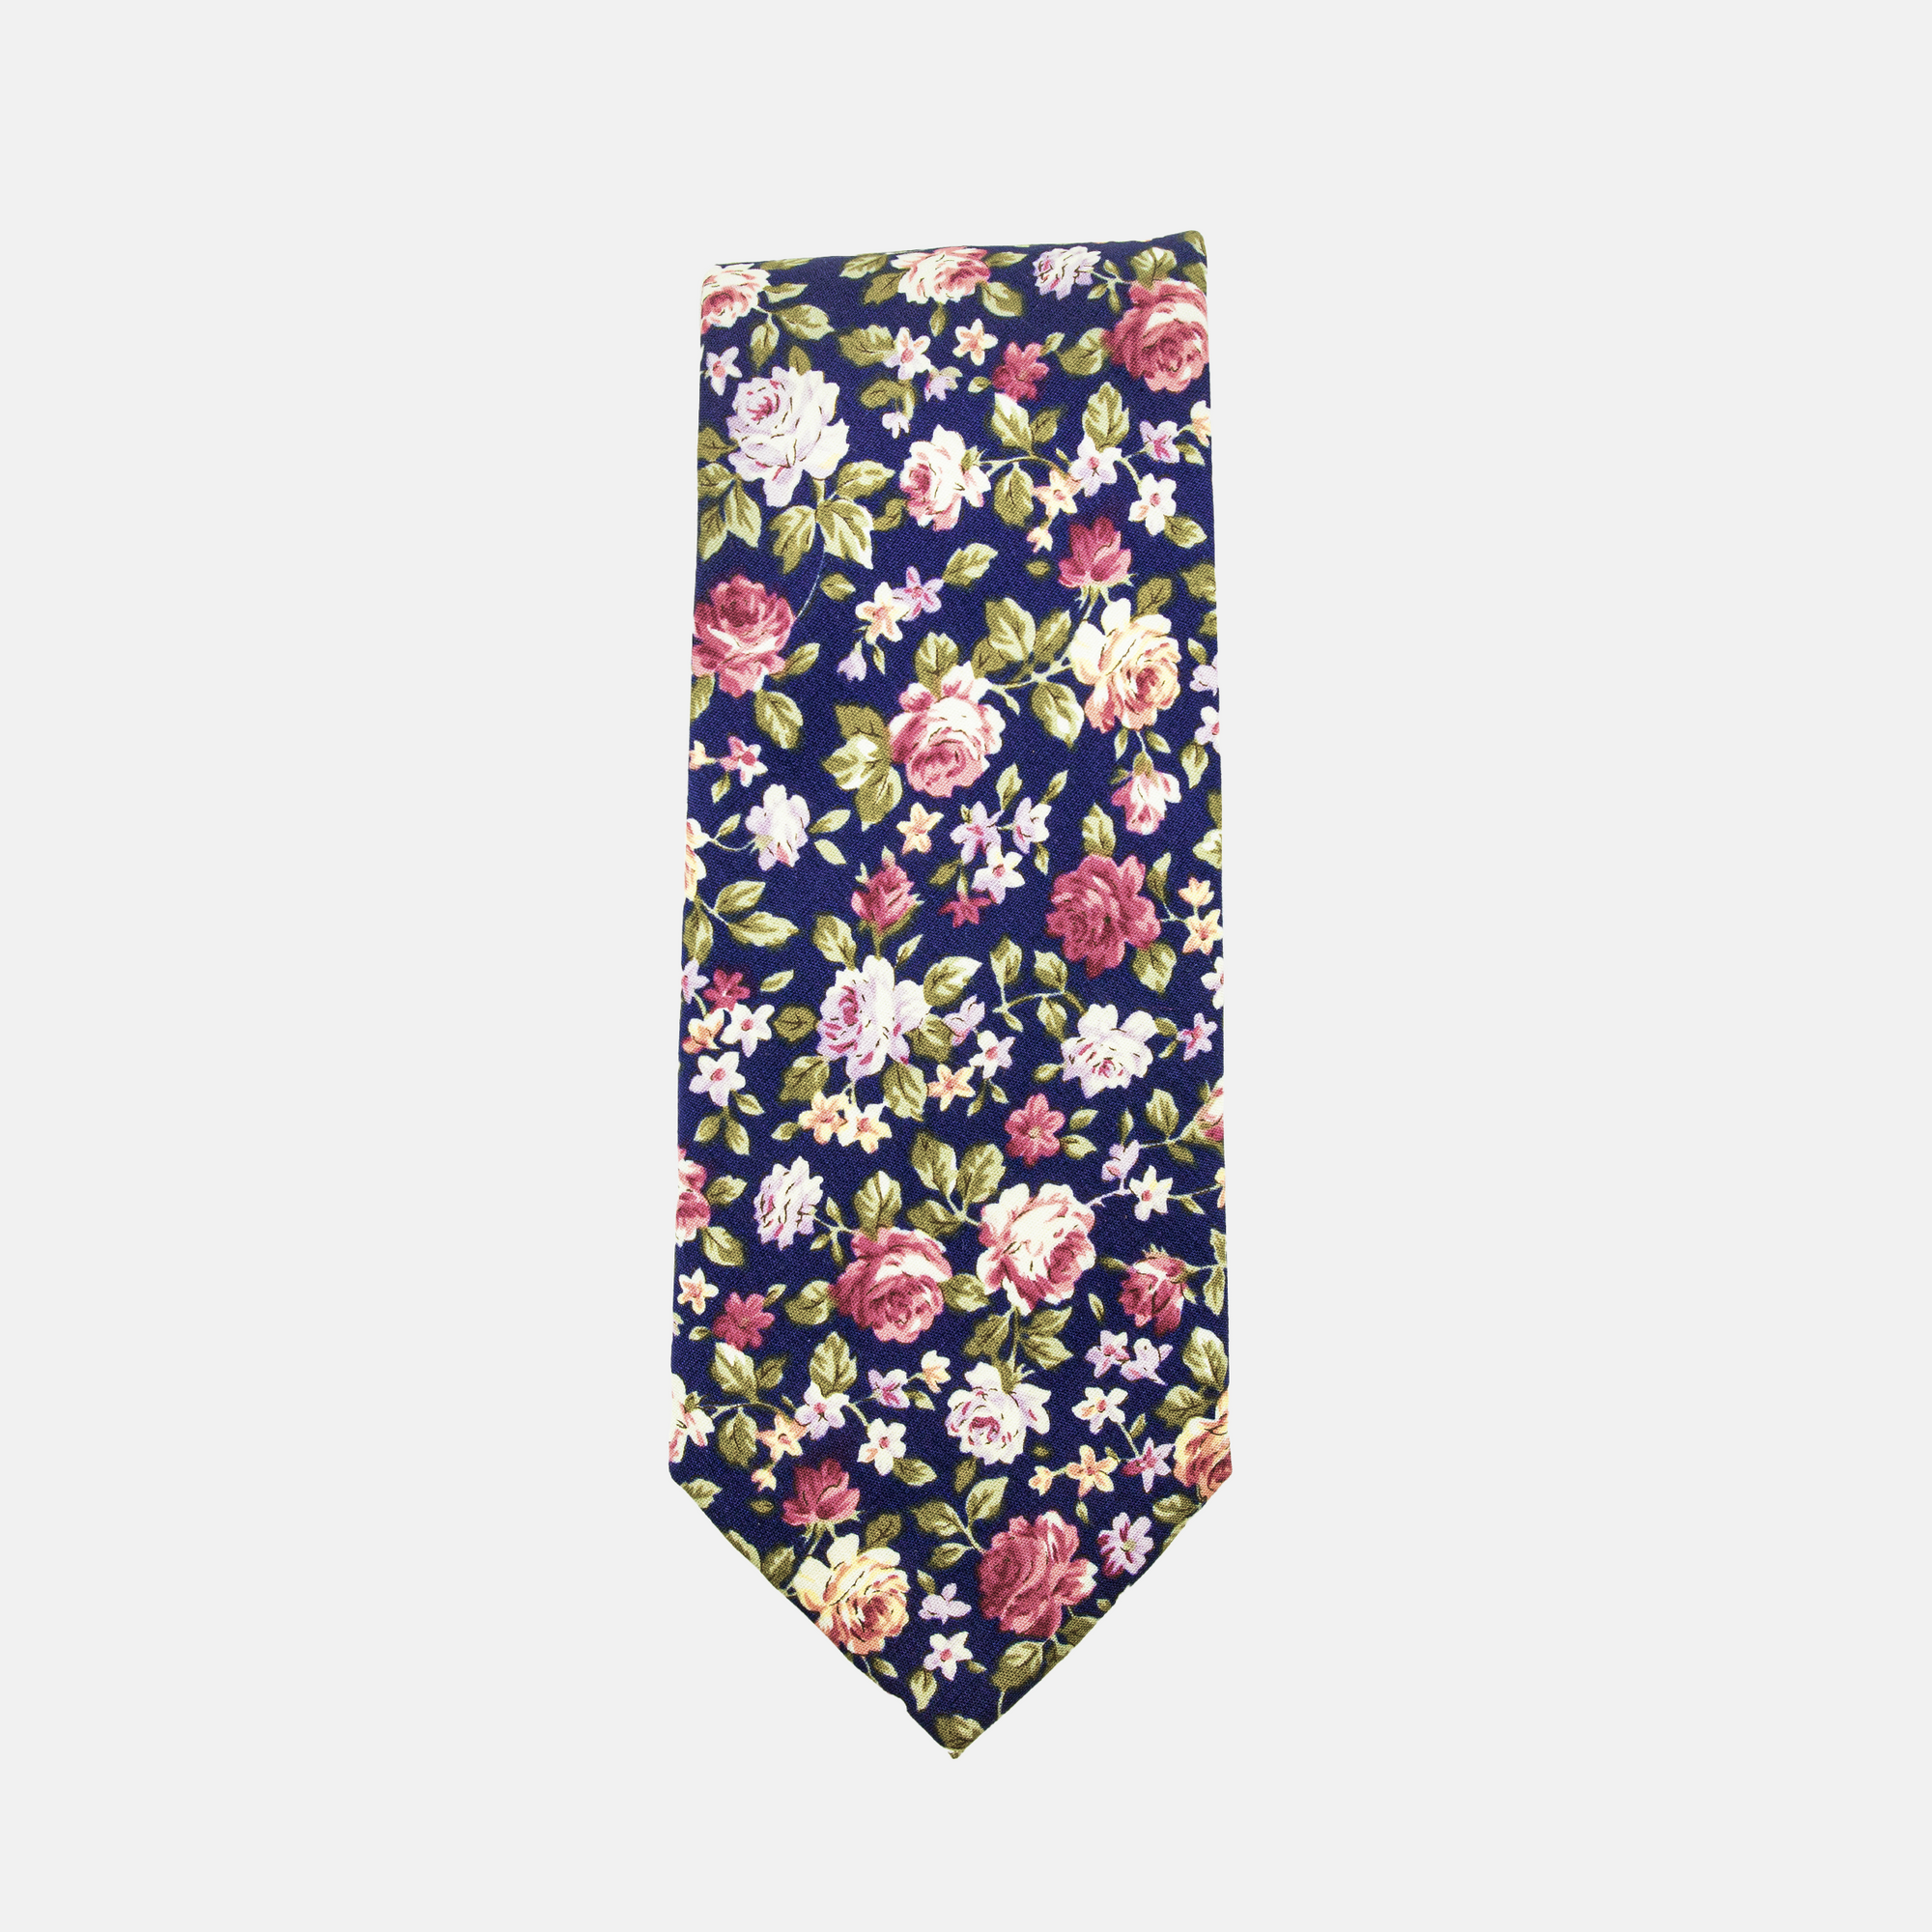 BASA - Men's Tie